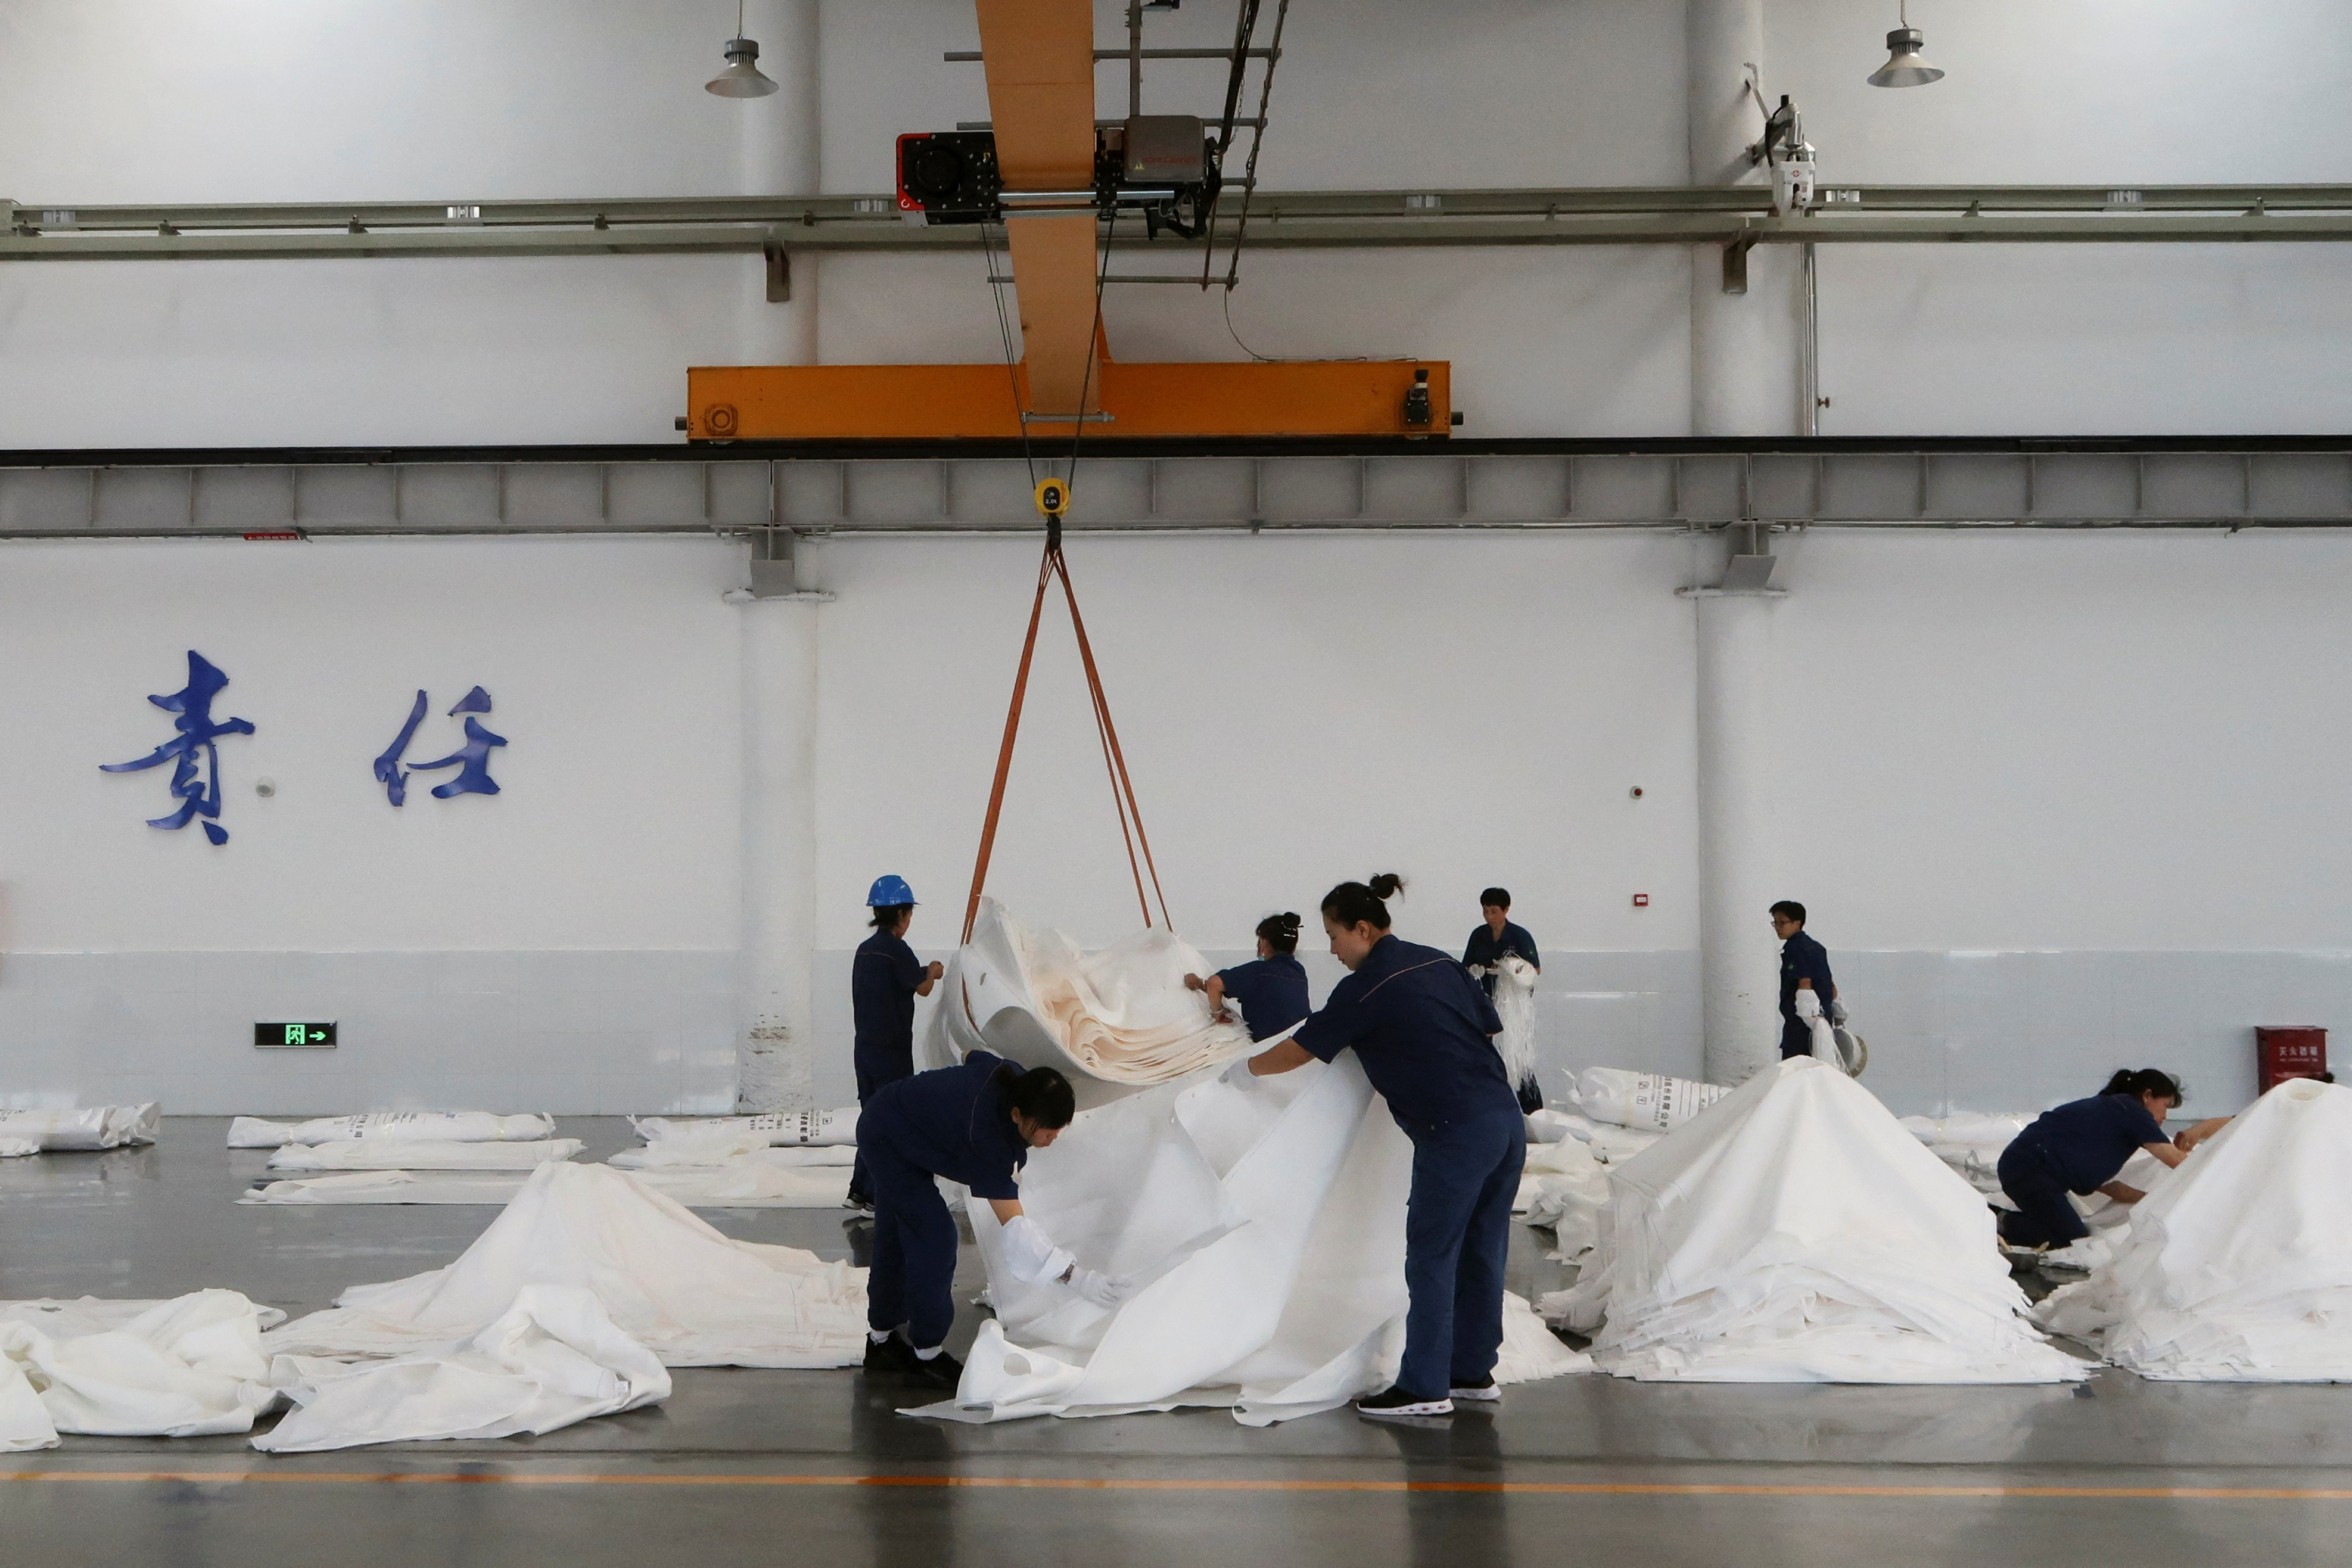 Employees work at Jingjin filter press factory in Dezhou